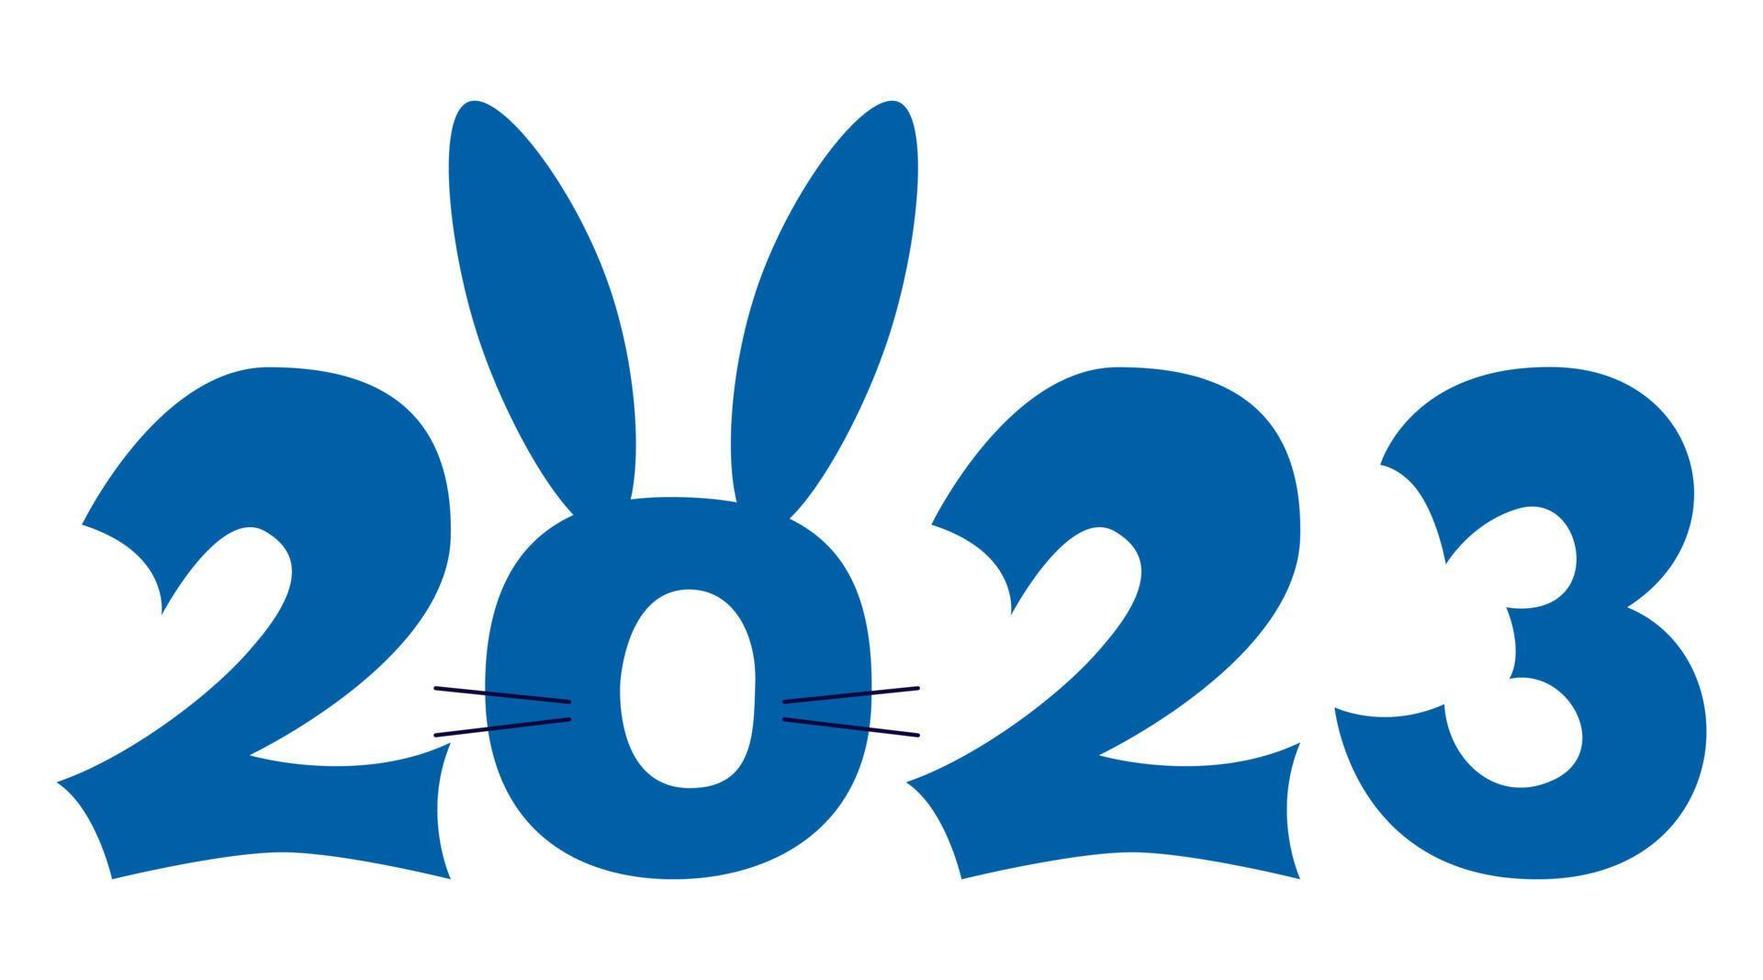 ano novo chinês 2023 ano do coelho. símbolos de natal para seu design. números com coelhinho fofo vetor